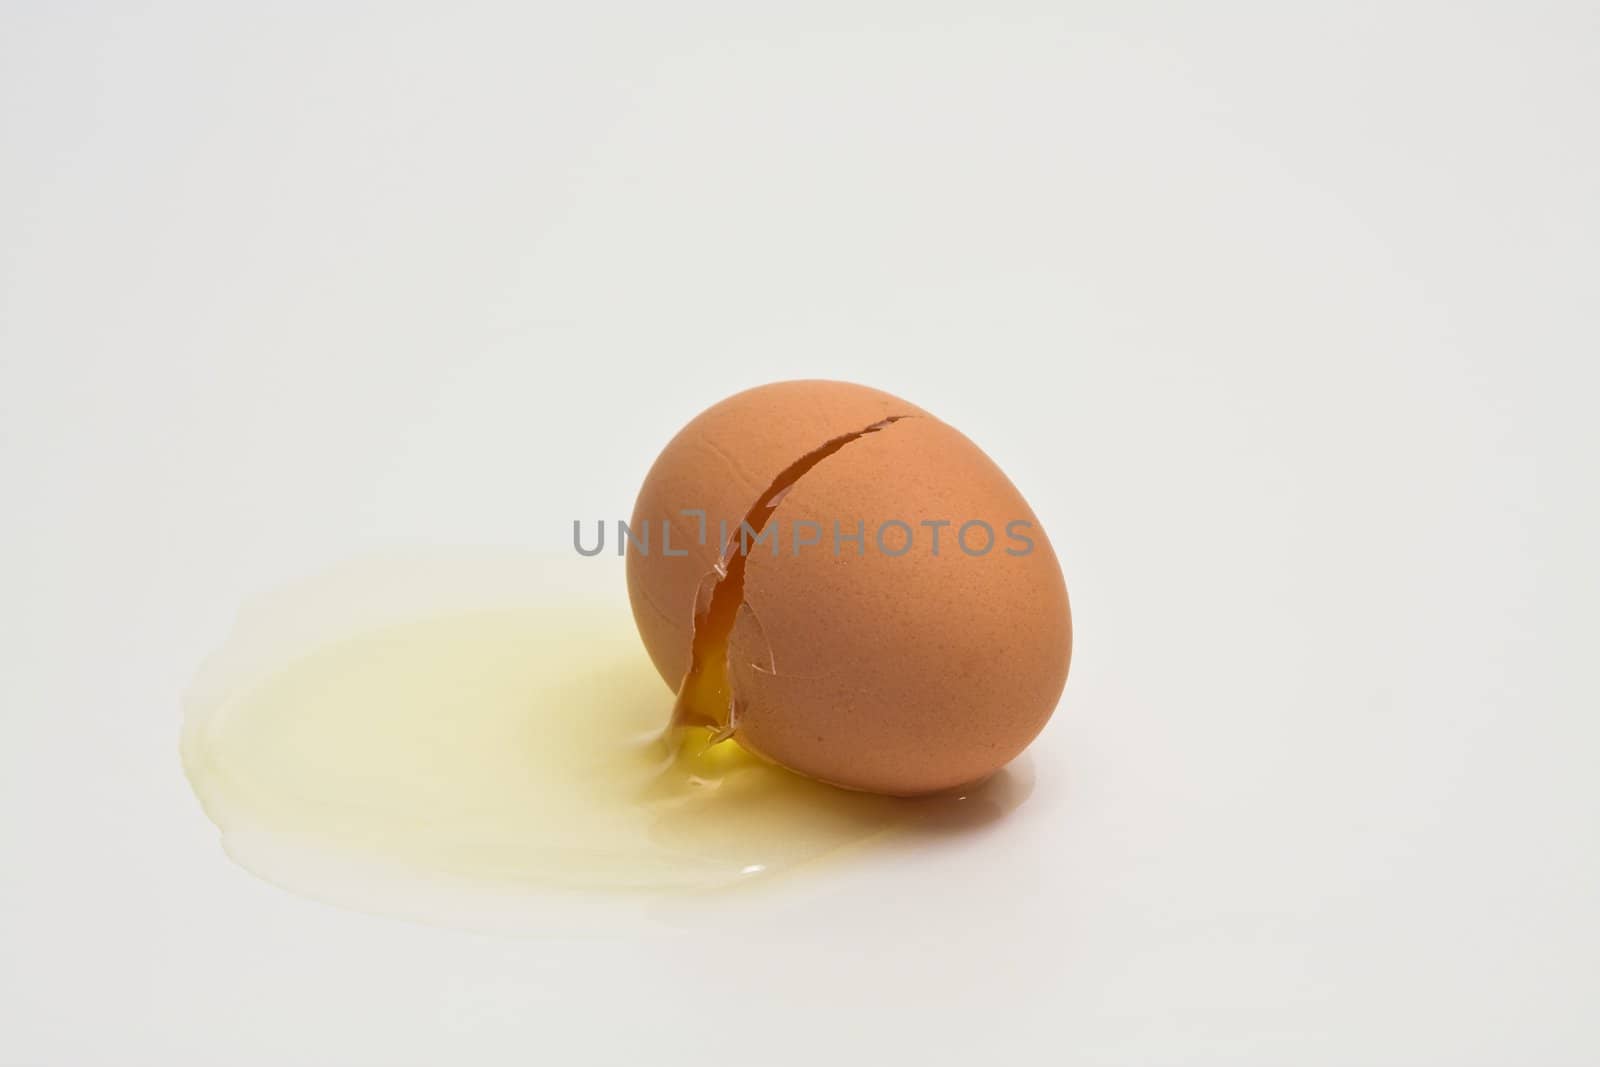 broken egg on white background